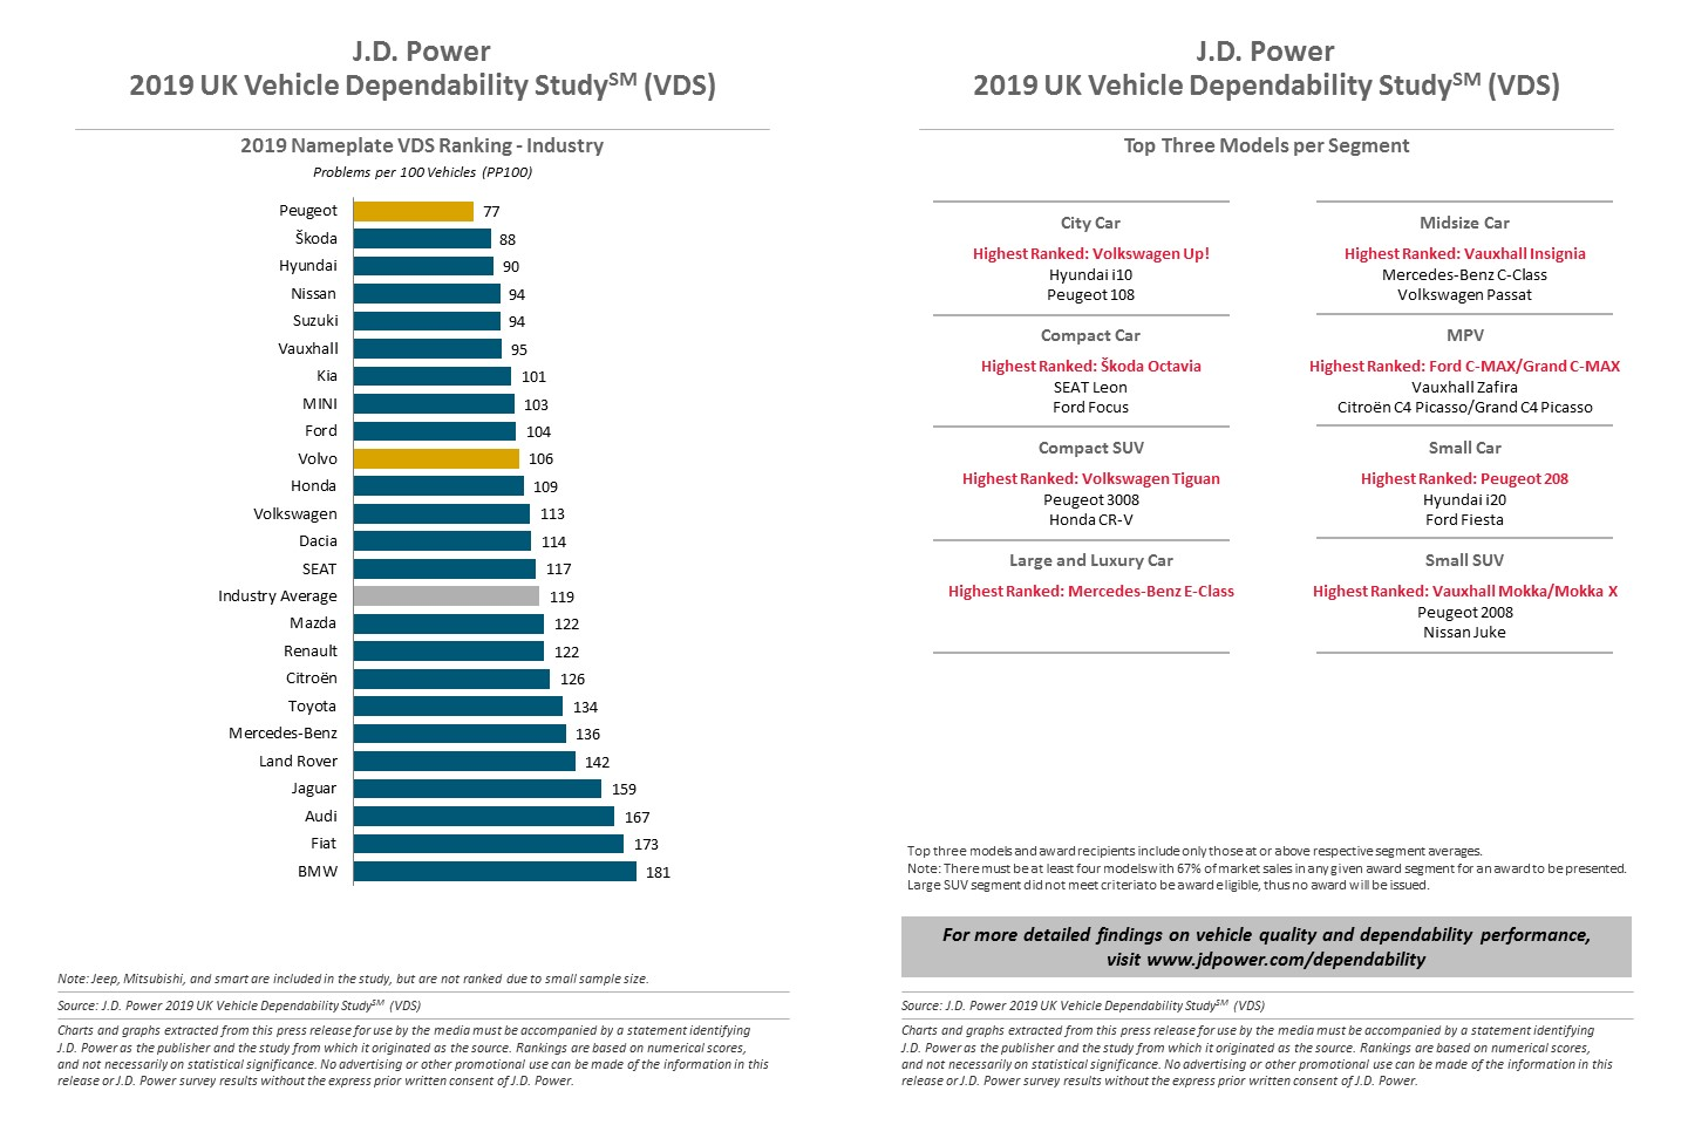 Peugeot tops JD Power Dependability Survey